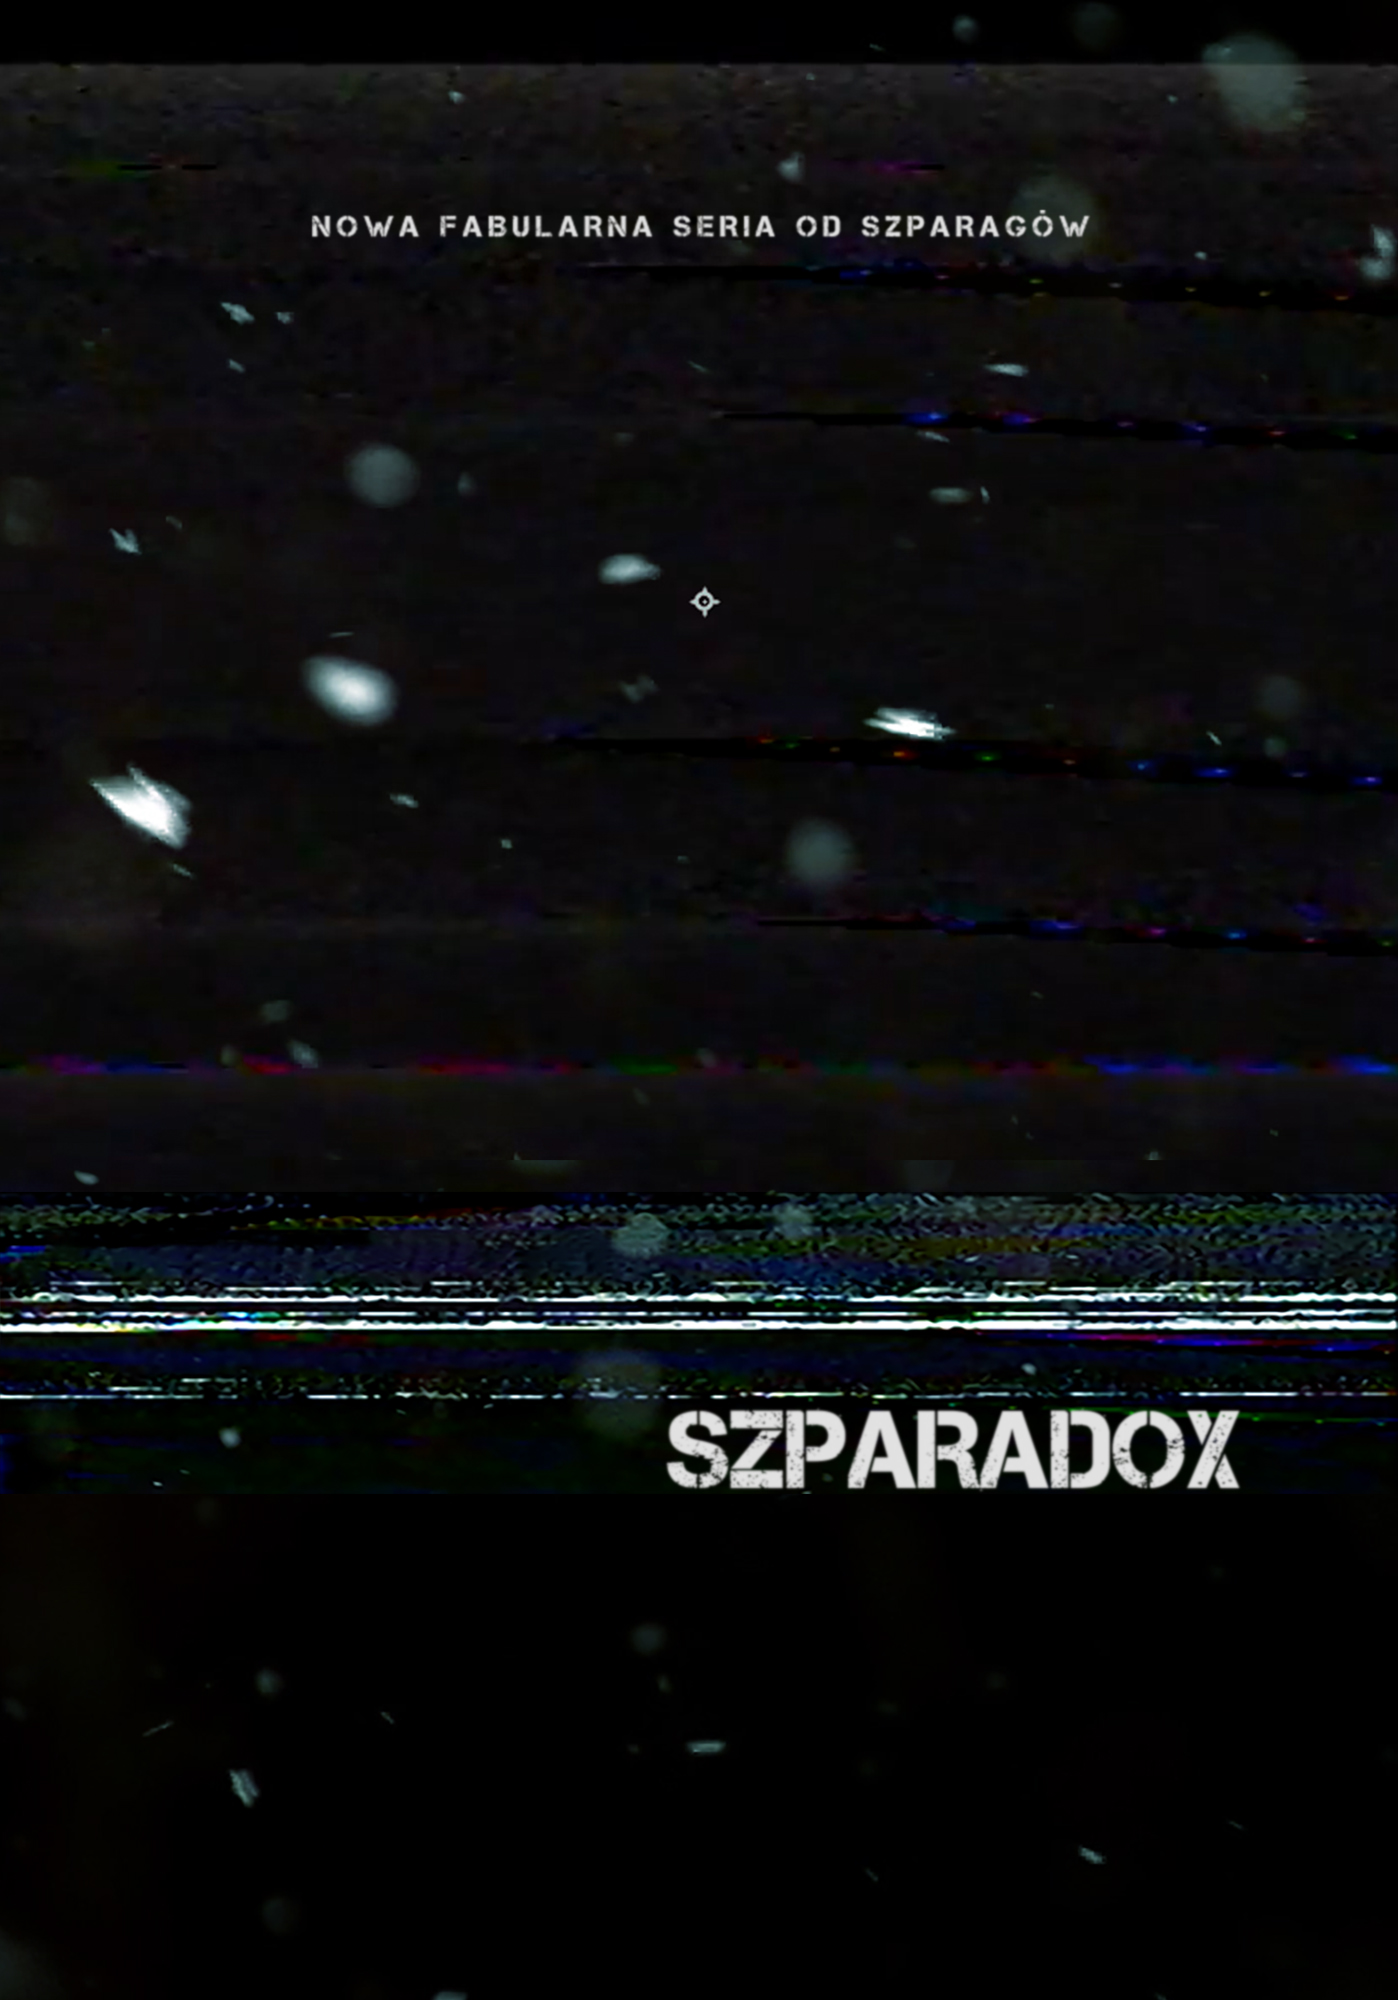 Szparadox